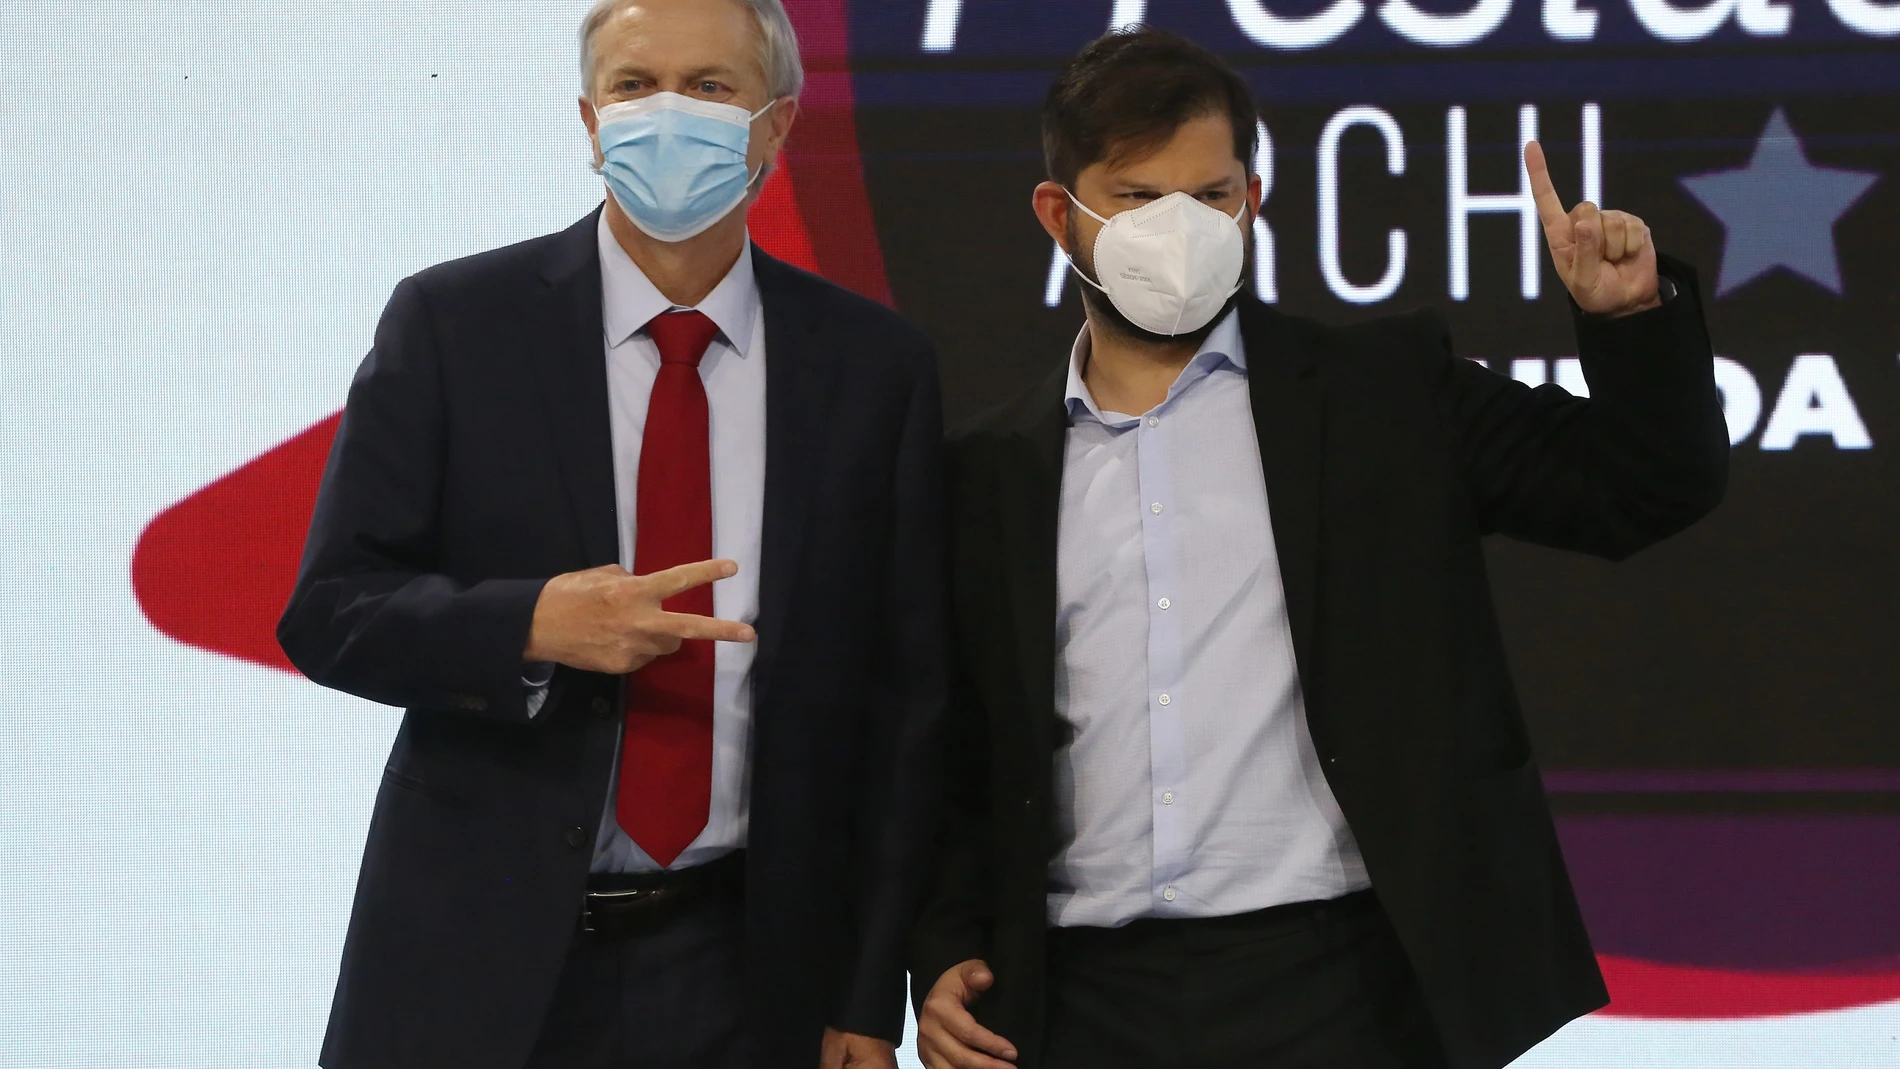 Los candidatos a la presidencia de Chile, el ultraderechista José Antonio Kast, del Partido Republicano, y el ex líder estudiantil de izquierda Gabriel Boric, del Frente Amplio, en un debate presidencial